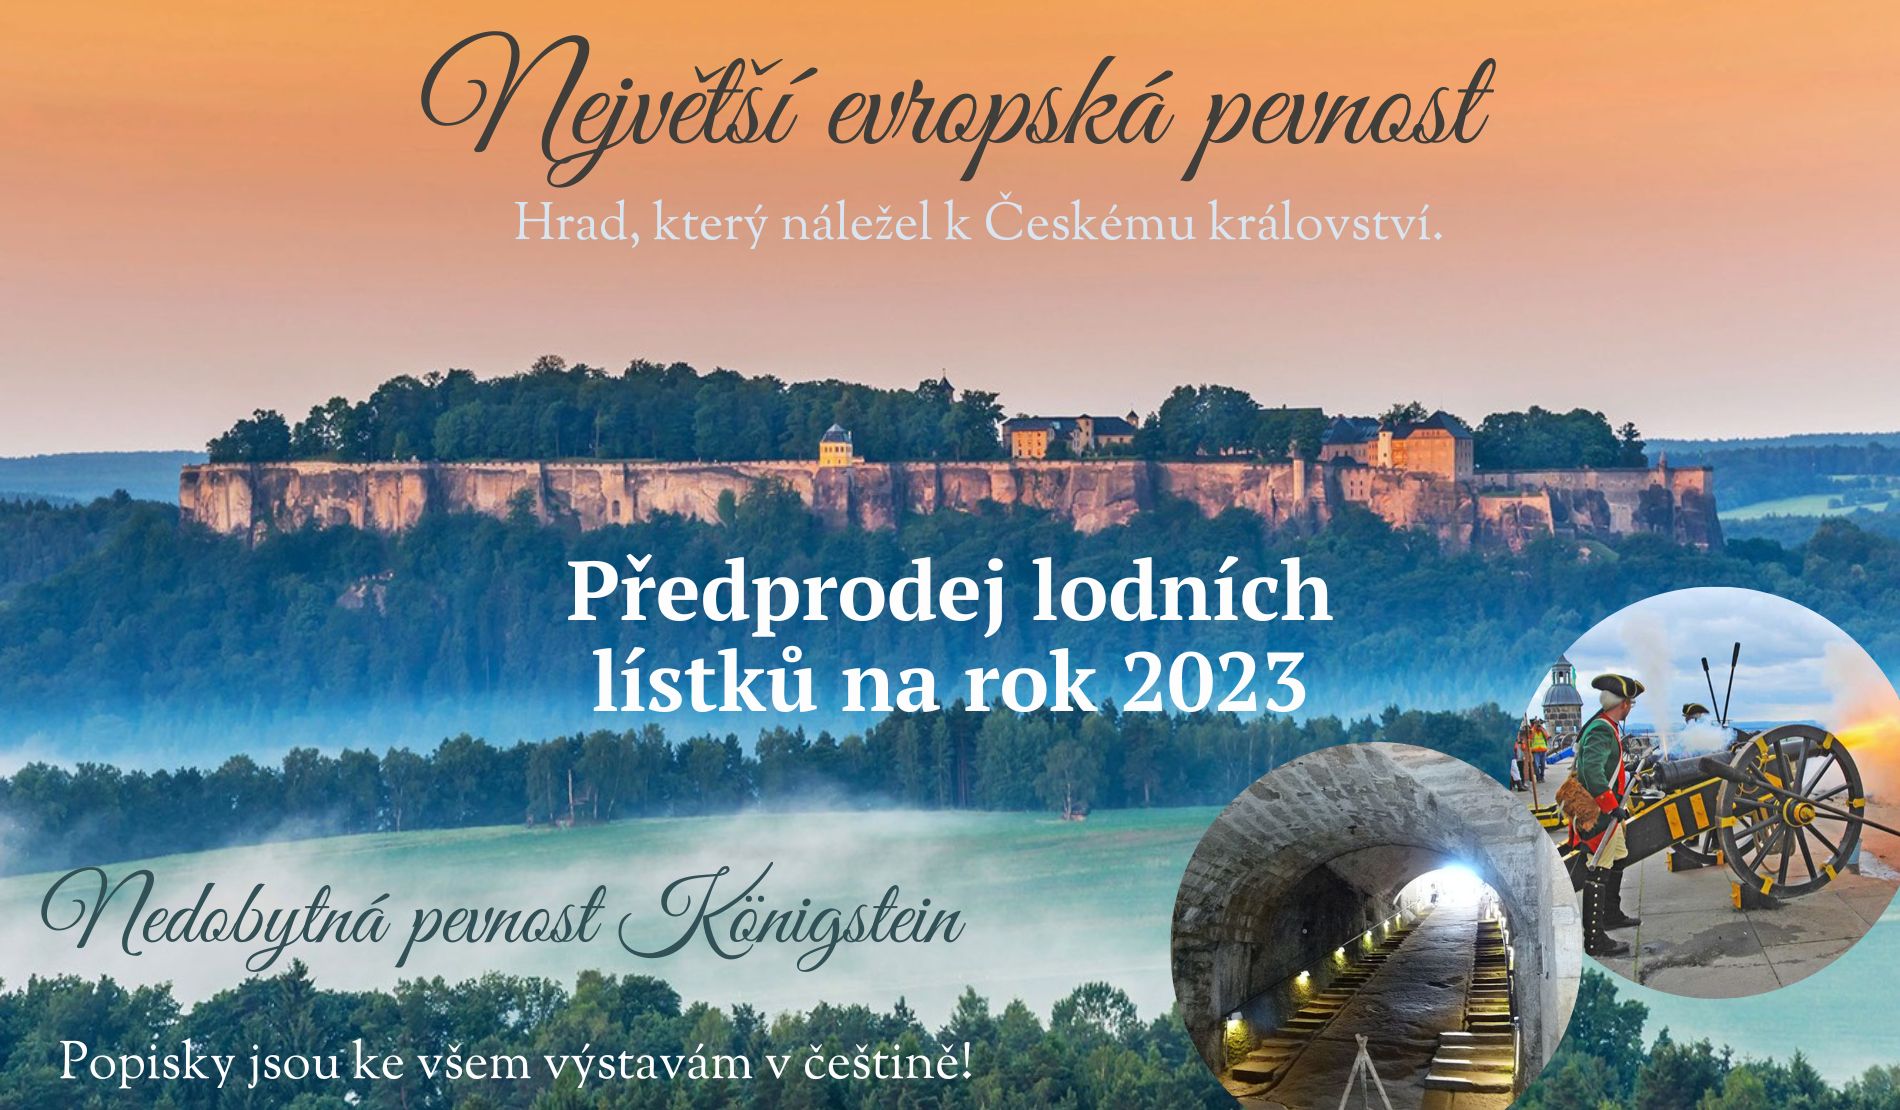 Předprodej lodních lístků na rok 2023 na pevnost Königstein